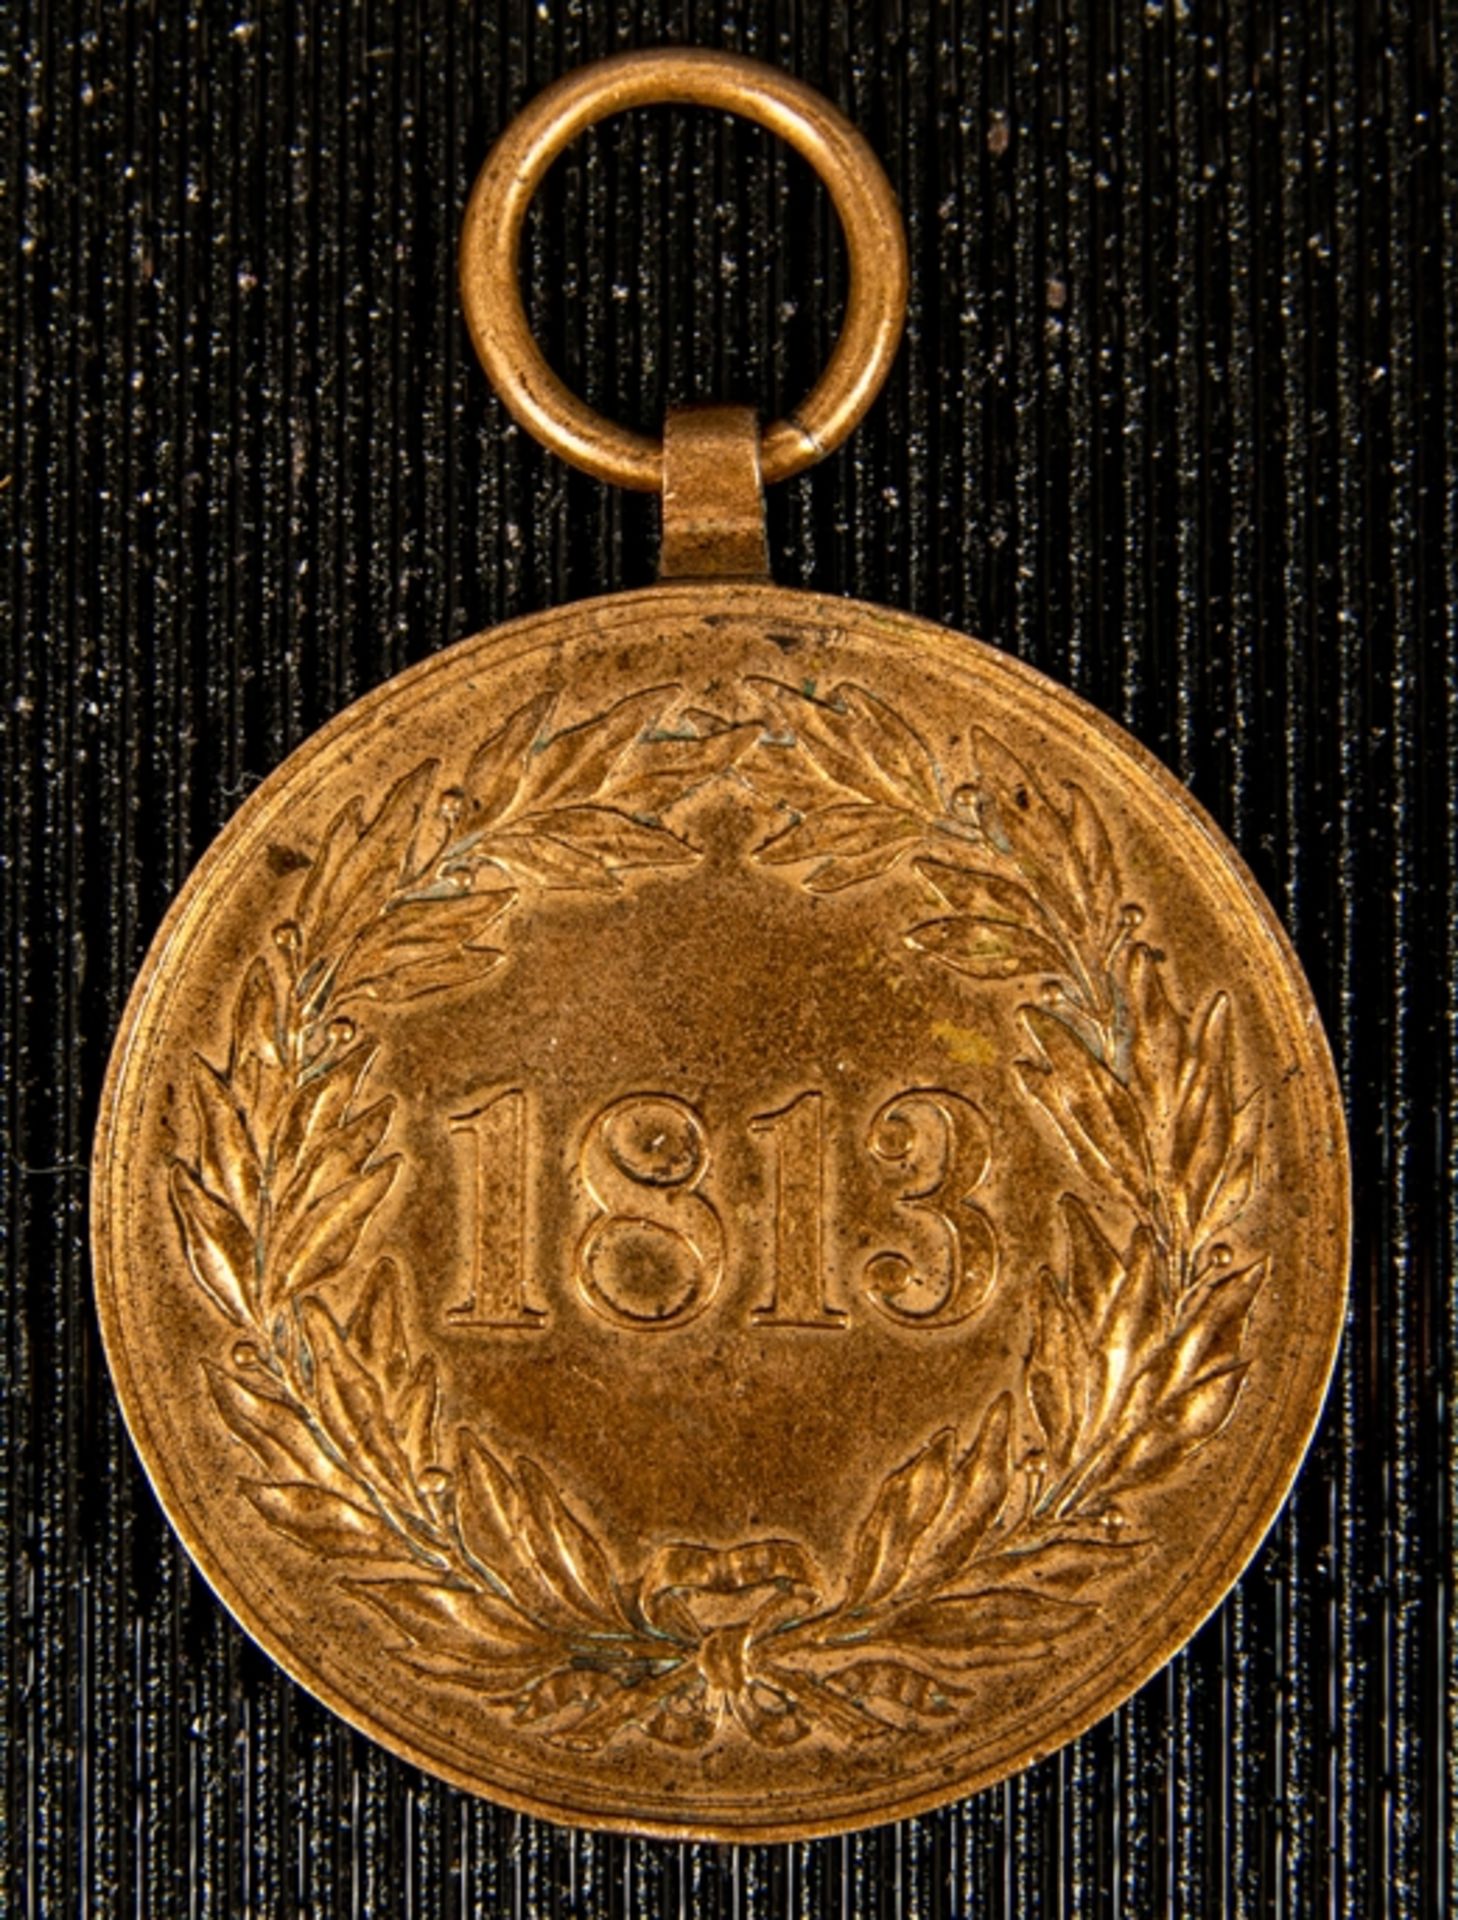 Kriegsgedenkmünze für die Freiwilligen von 1813 (Befreiungskriege), verliehen v